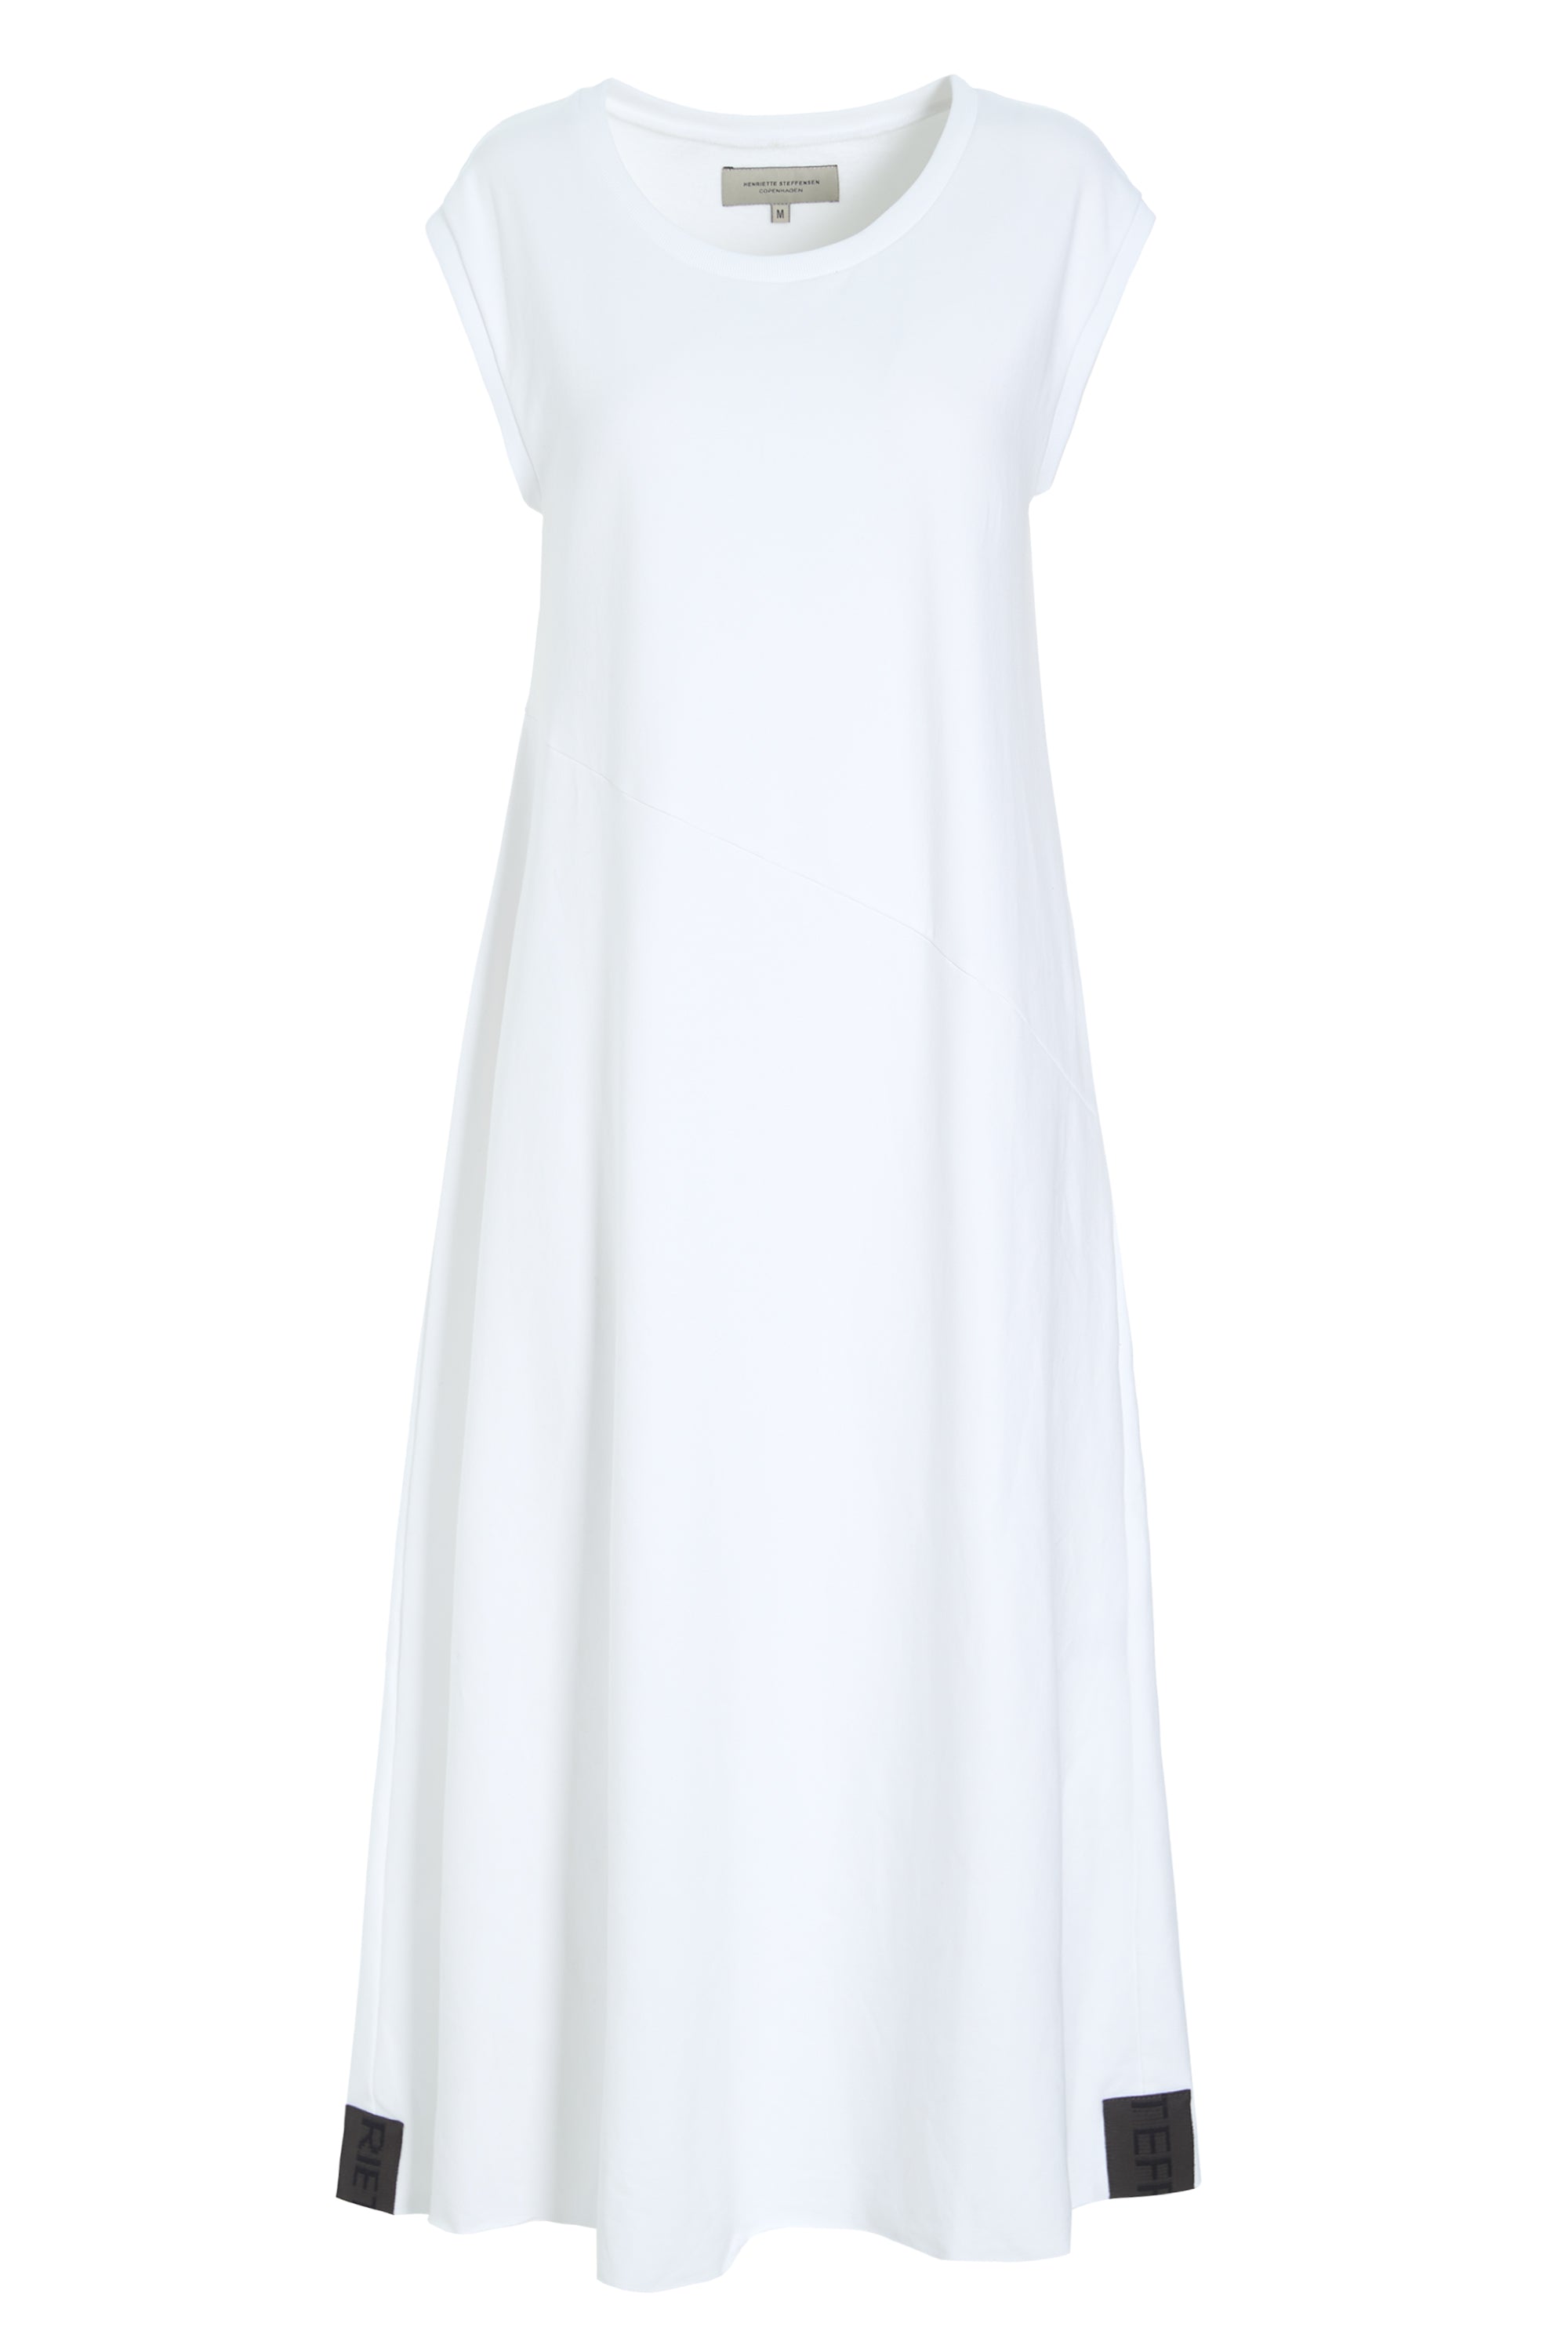 HENRIETTE STEFFENSEN COPENHAGEN SWEAT KLEID - 73405 DRESS cotton WHITE 816